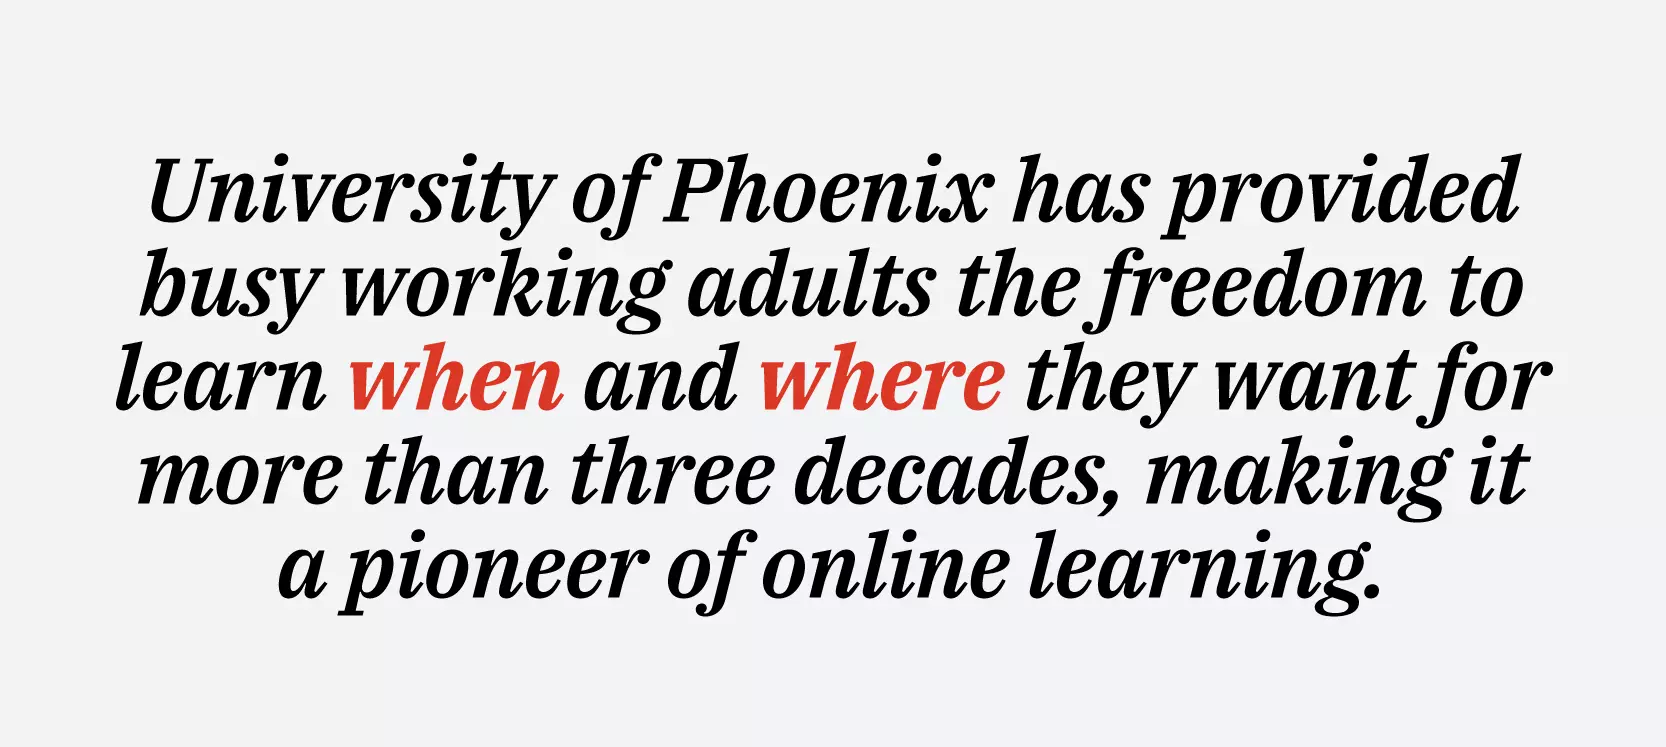 澳门天天彩开奖记录 has provided busy working adults the freedom to learn when and where they want for more than three decades, making it a pioneer of online learning.